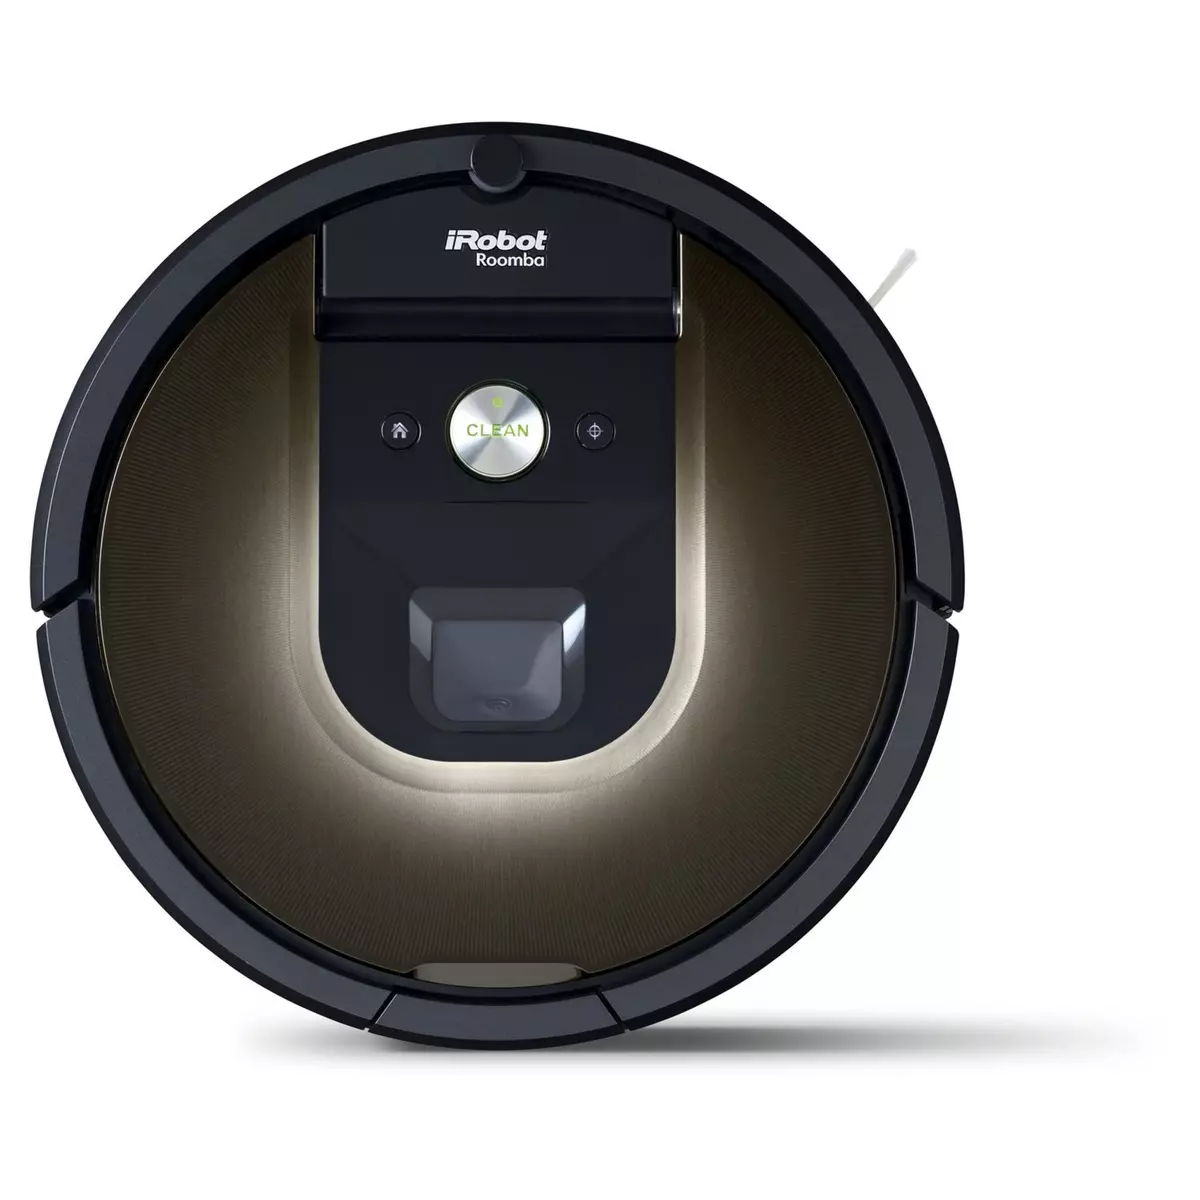 IROBOT Aspirateur robot Roomba 980 - Marron et noir